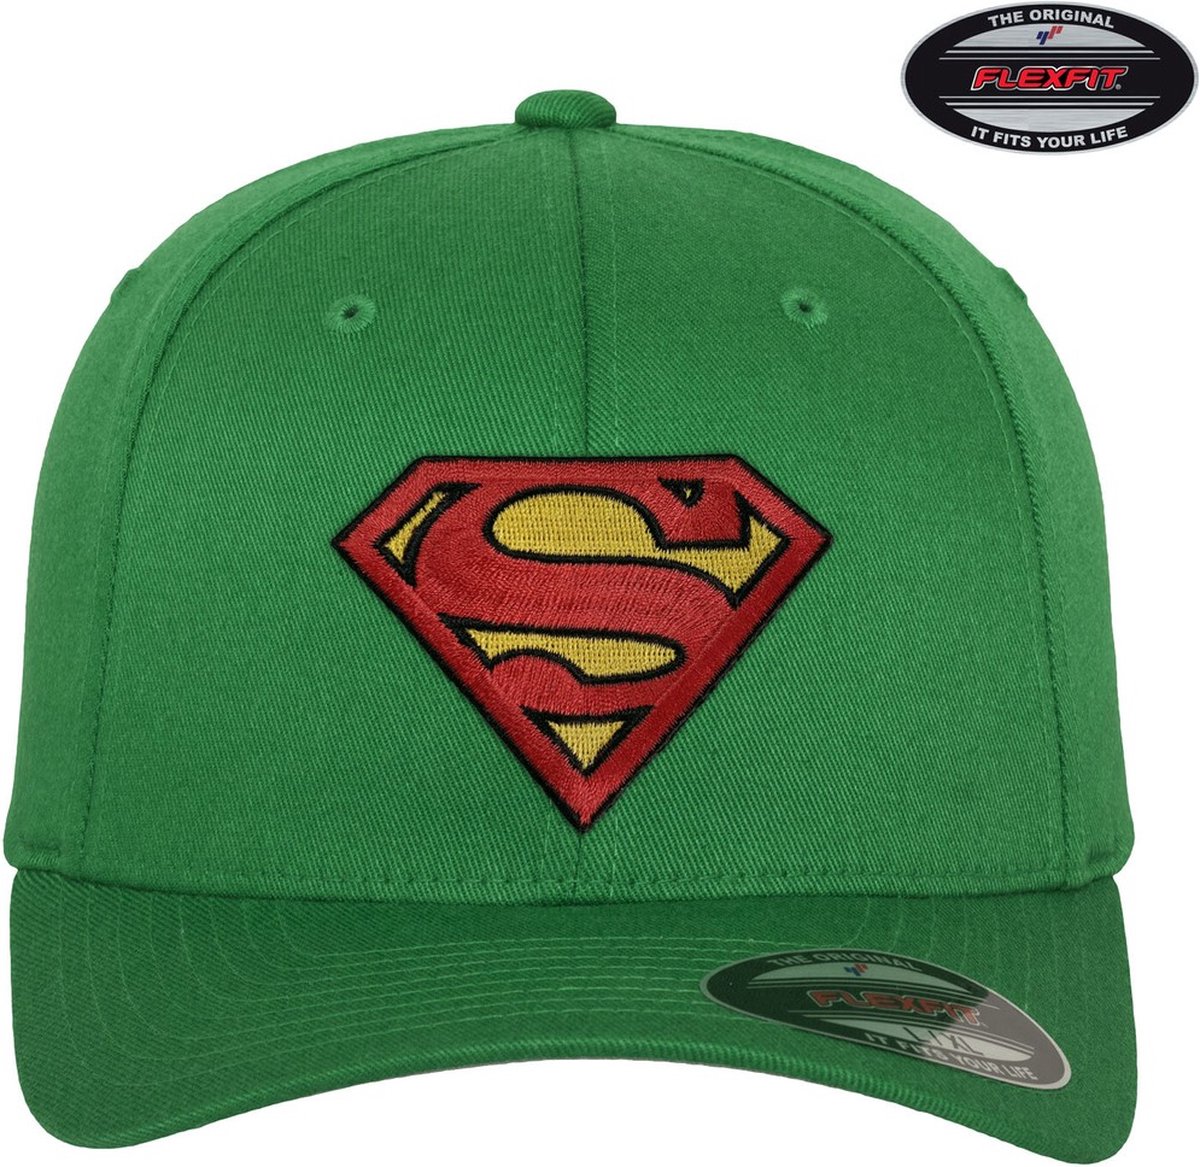 Superman Flexfit Cap Green-S/M